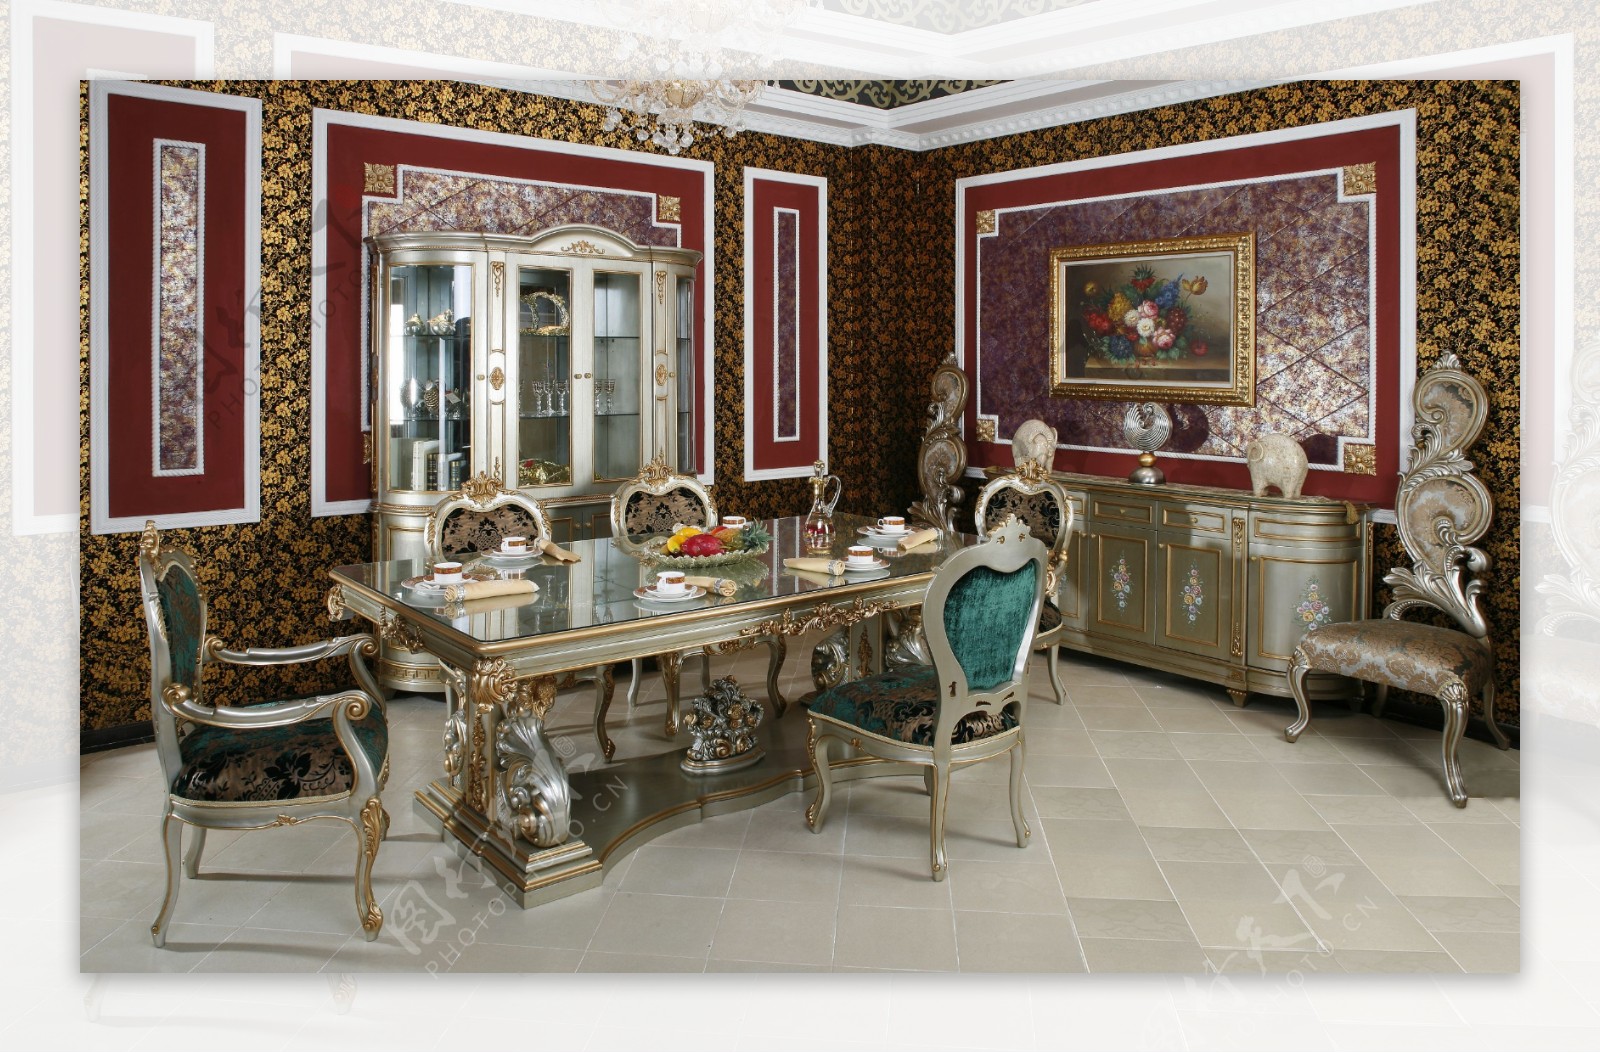 古典艺术欧式家具装修图片